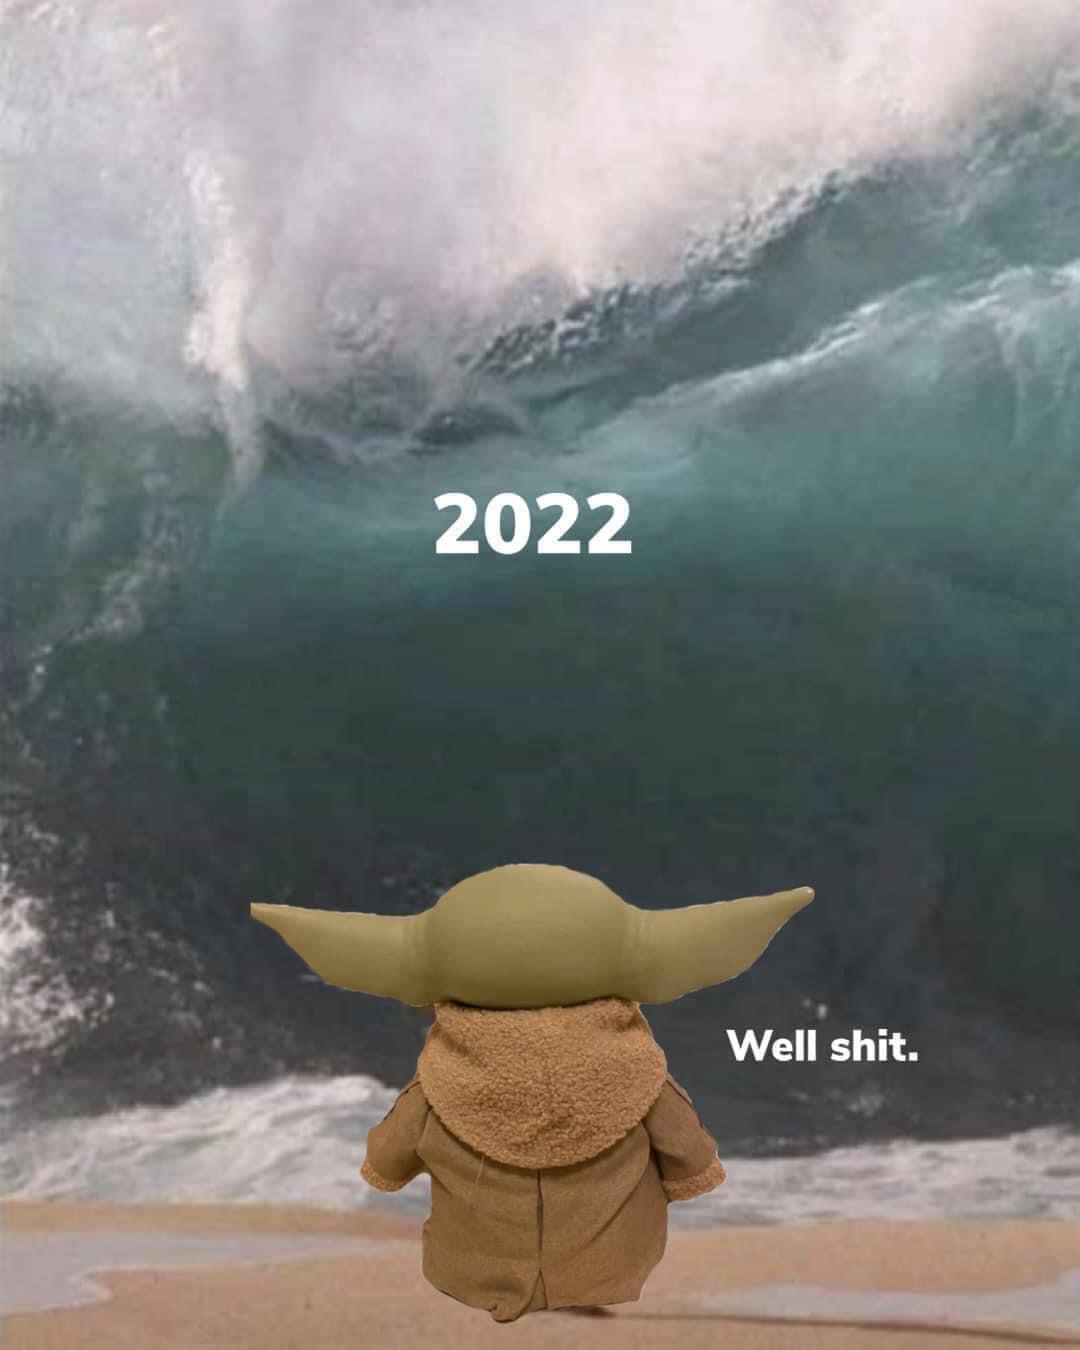 2022 Baby Yoda meme